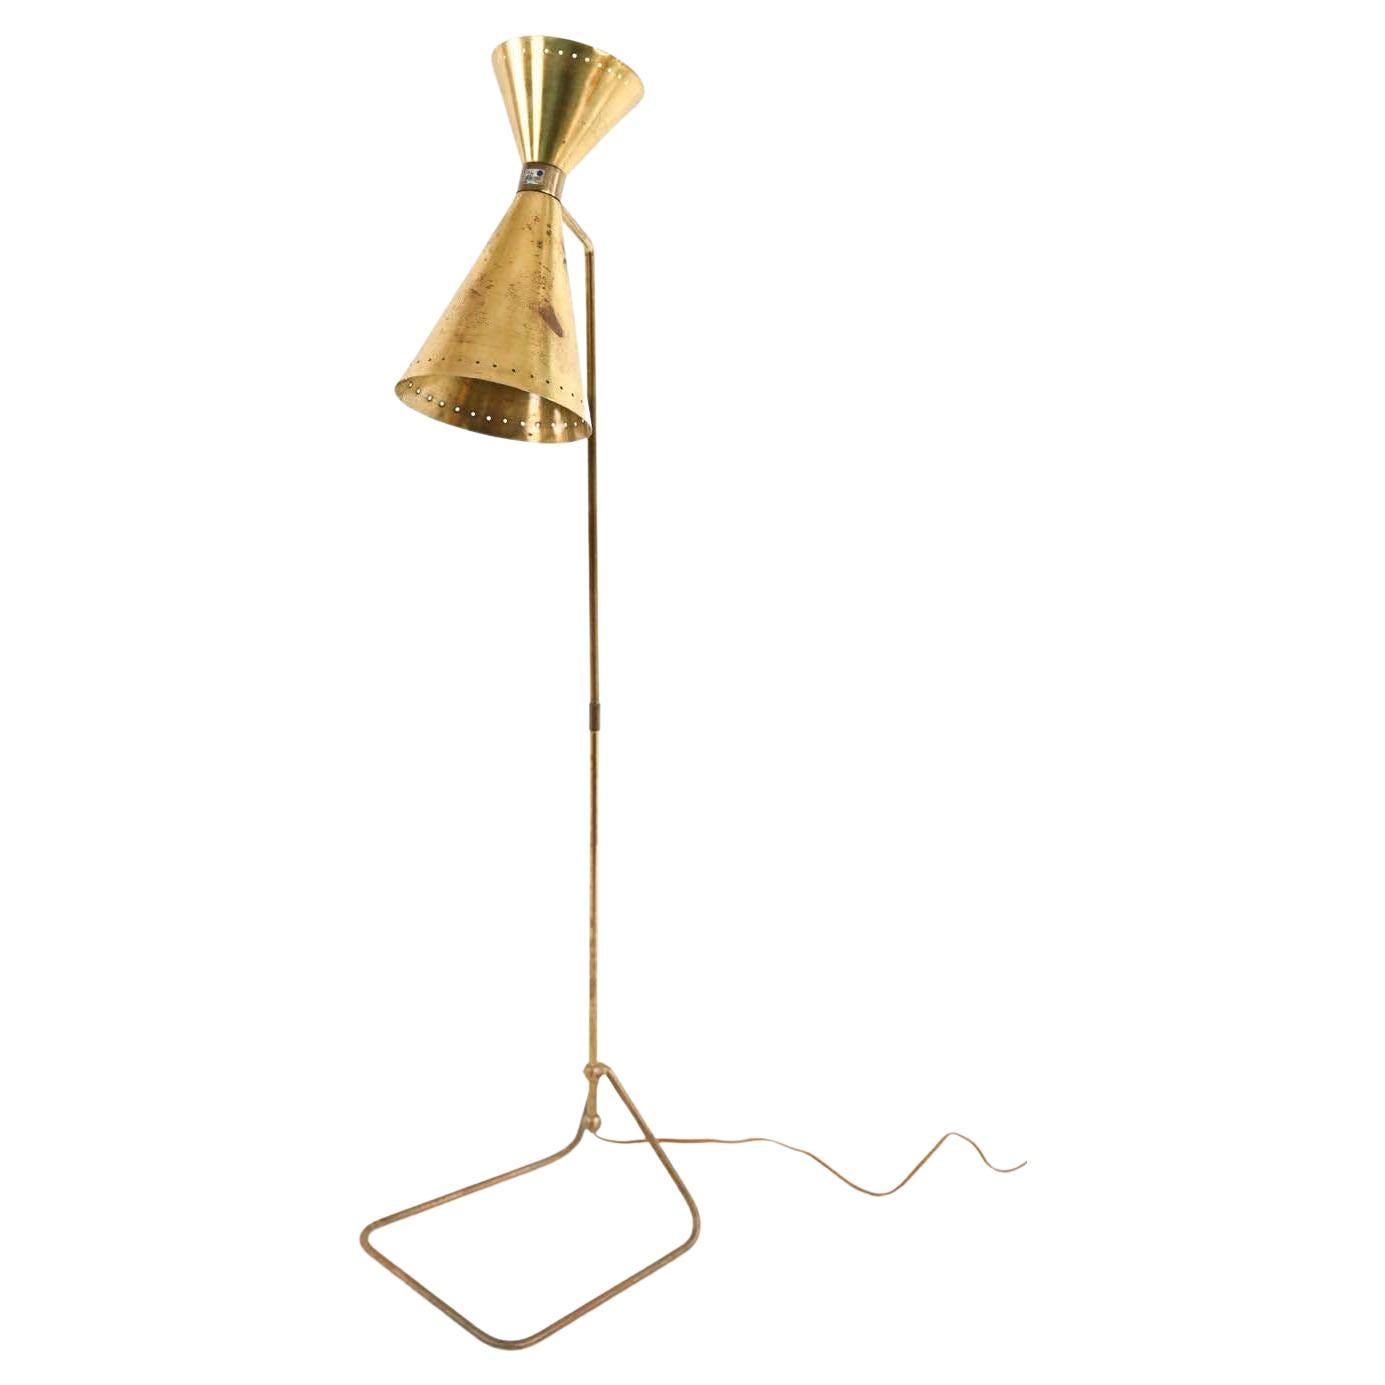 Vintage Italian Mid-Century Modern Floor Lamp, Jean-Boris Lacroix, Brass 1950's